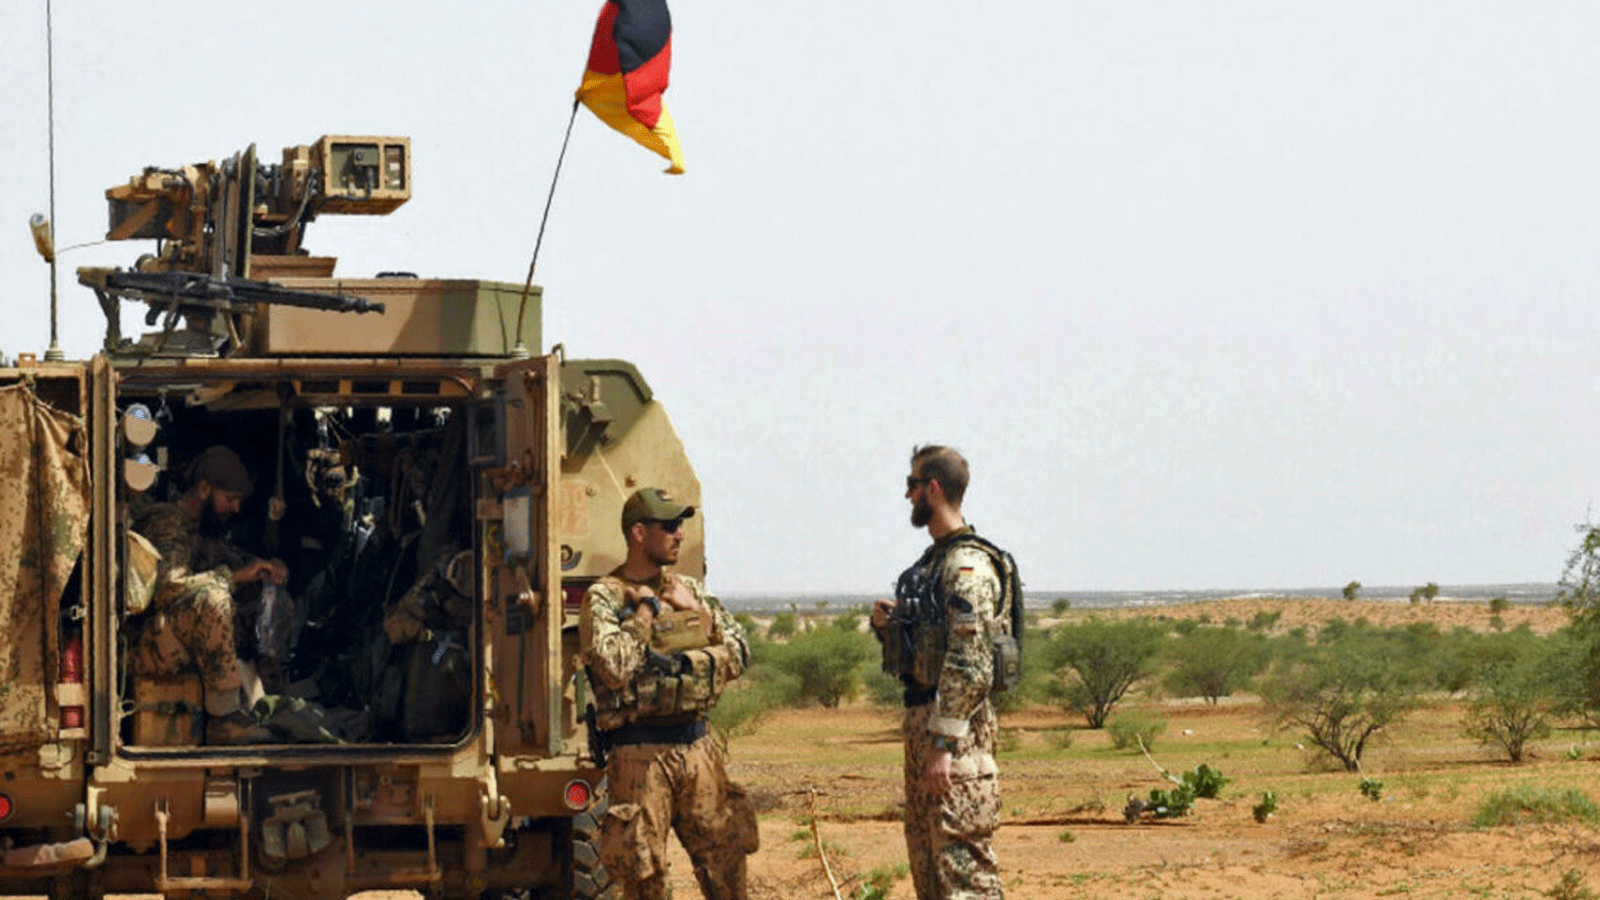 جنود من مفرزة ألمانية تابعة لبعثة الأمم المتحدة المتكاملة المتعددة الأبعاد لتحقيق الاستقرار في مالي خلال دورية على الطريق من غاو إلى غوسي في مالي. 2 آب\أغسطس 2018.